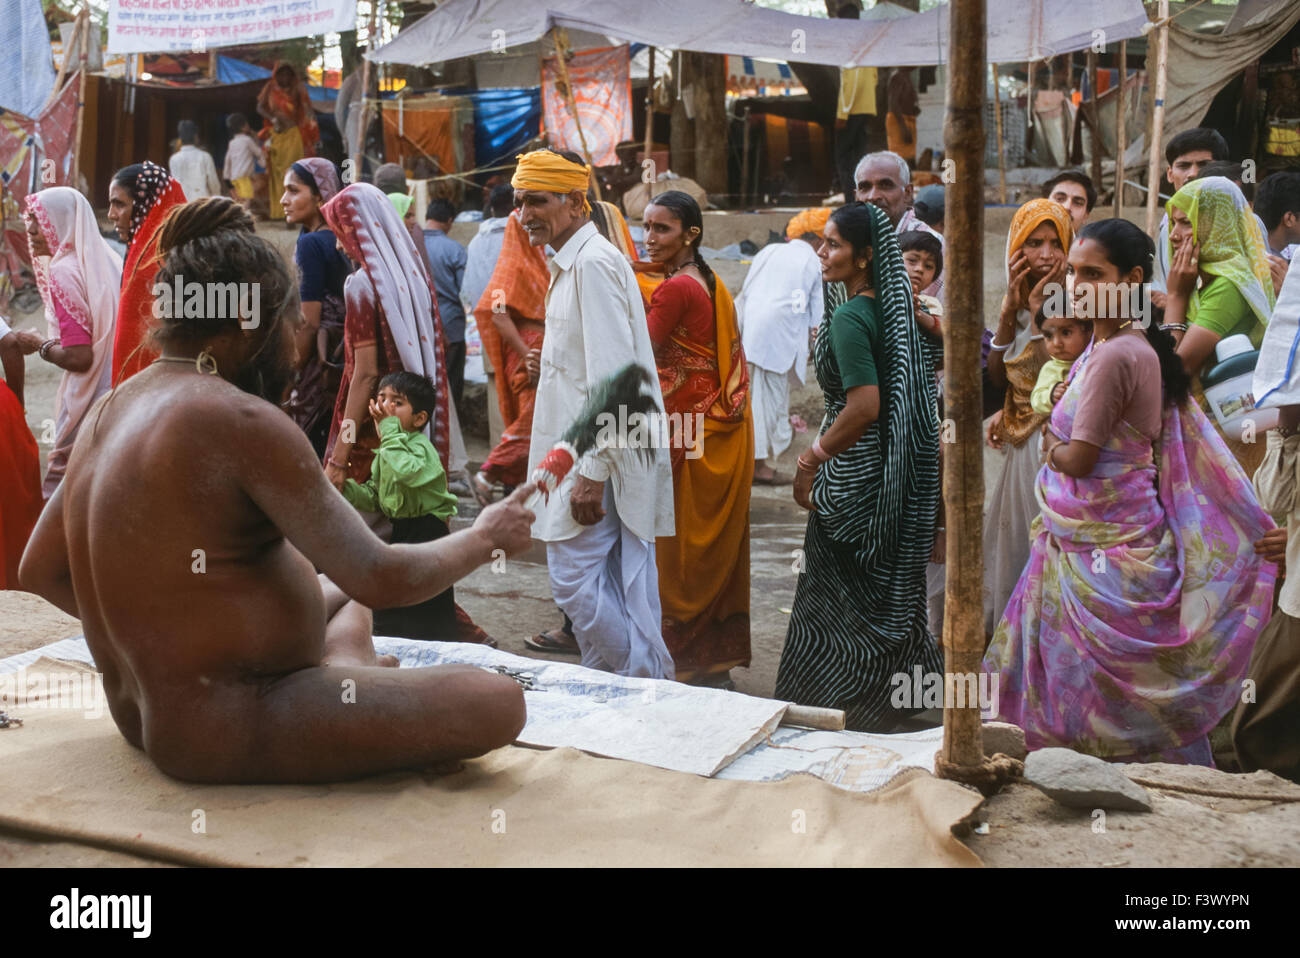 Naga (naked) Sadhu from the Juna Akhara looking out to passing pilgrims from his ashram, Simhastha Kumbh Mela 2004, Ujjain, Madhya Pradesh, India Stock Photo